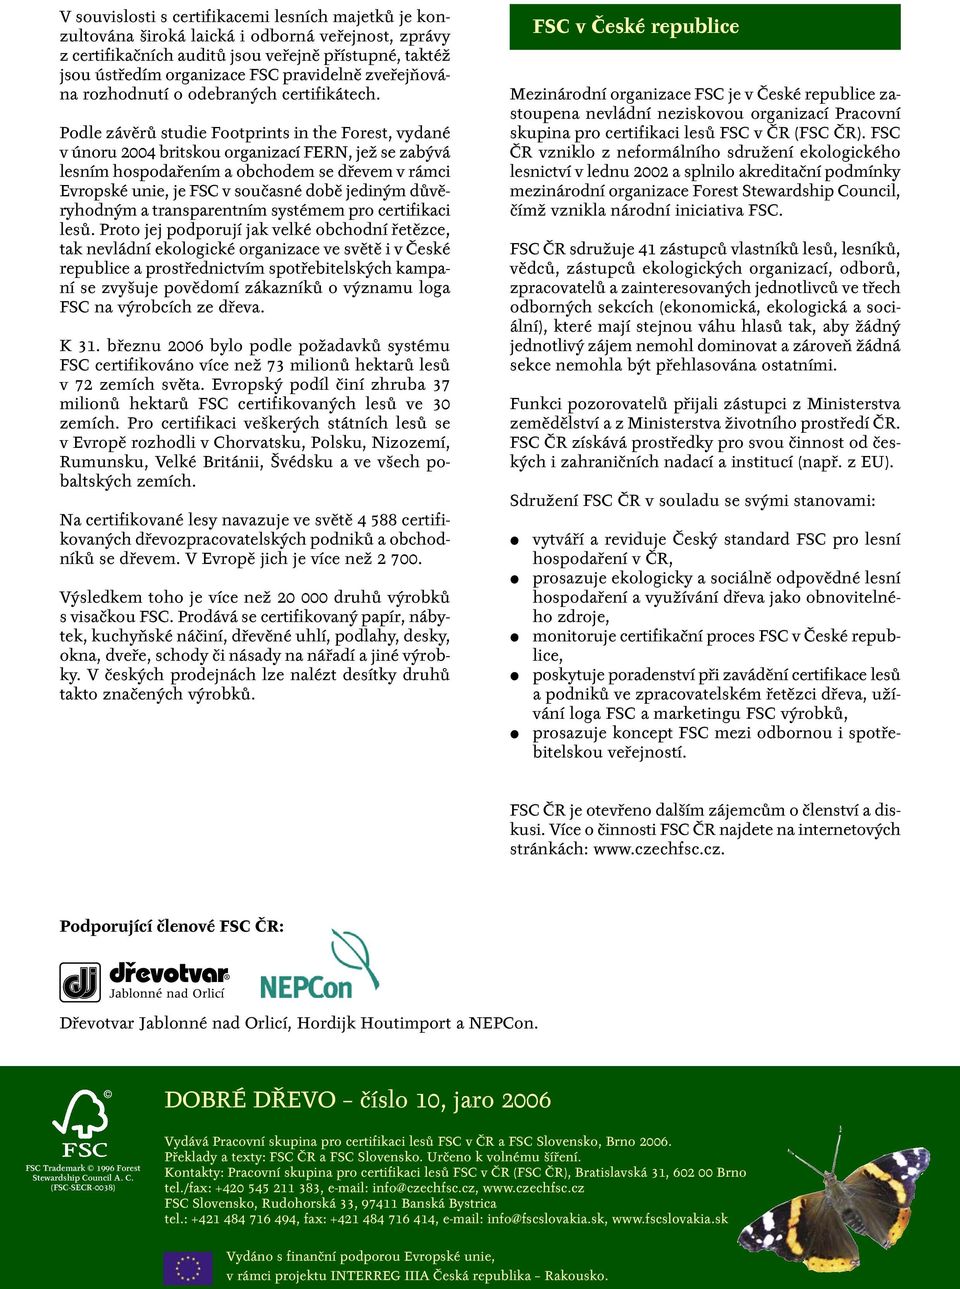 Podle závěrů studie Footprints in the Forest, vydané v únoru 2004 britskou organizací FERN, jež se zabývá lesním hospodařením a obchodem se dřevem v rámci Evropské unie, je FSC v současné době